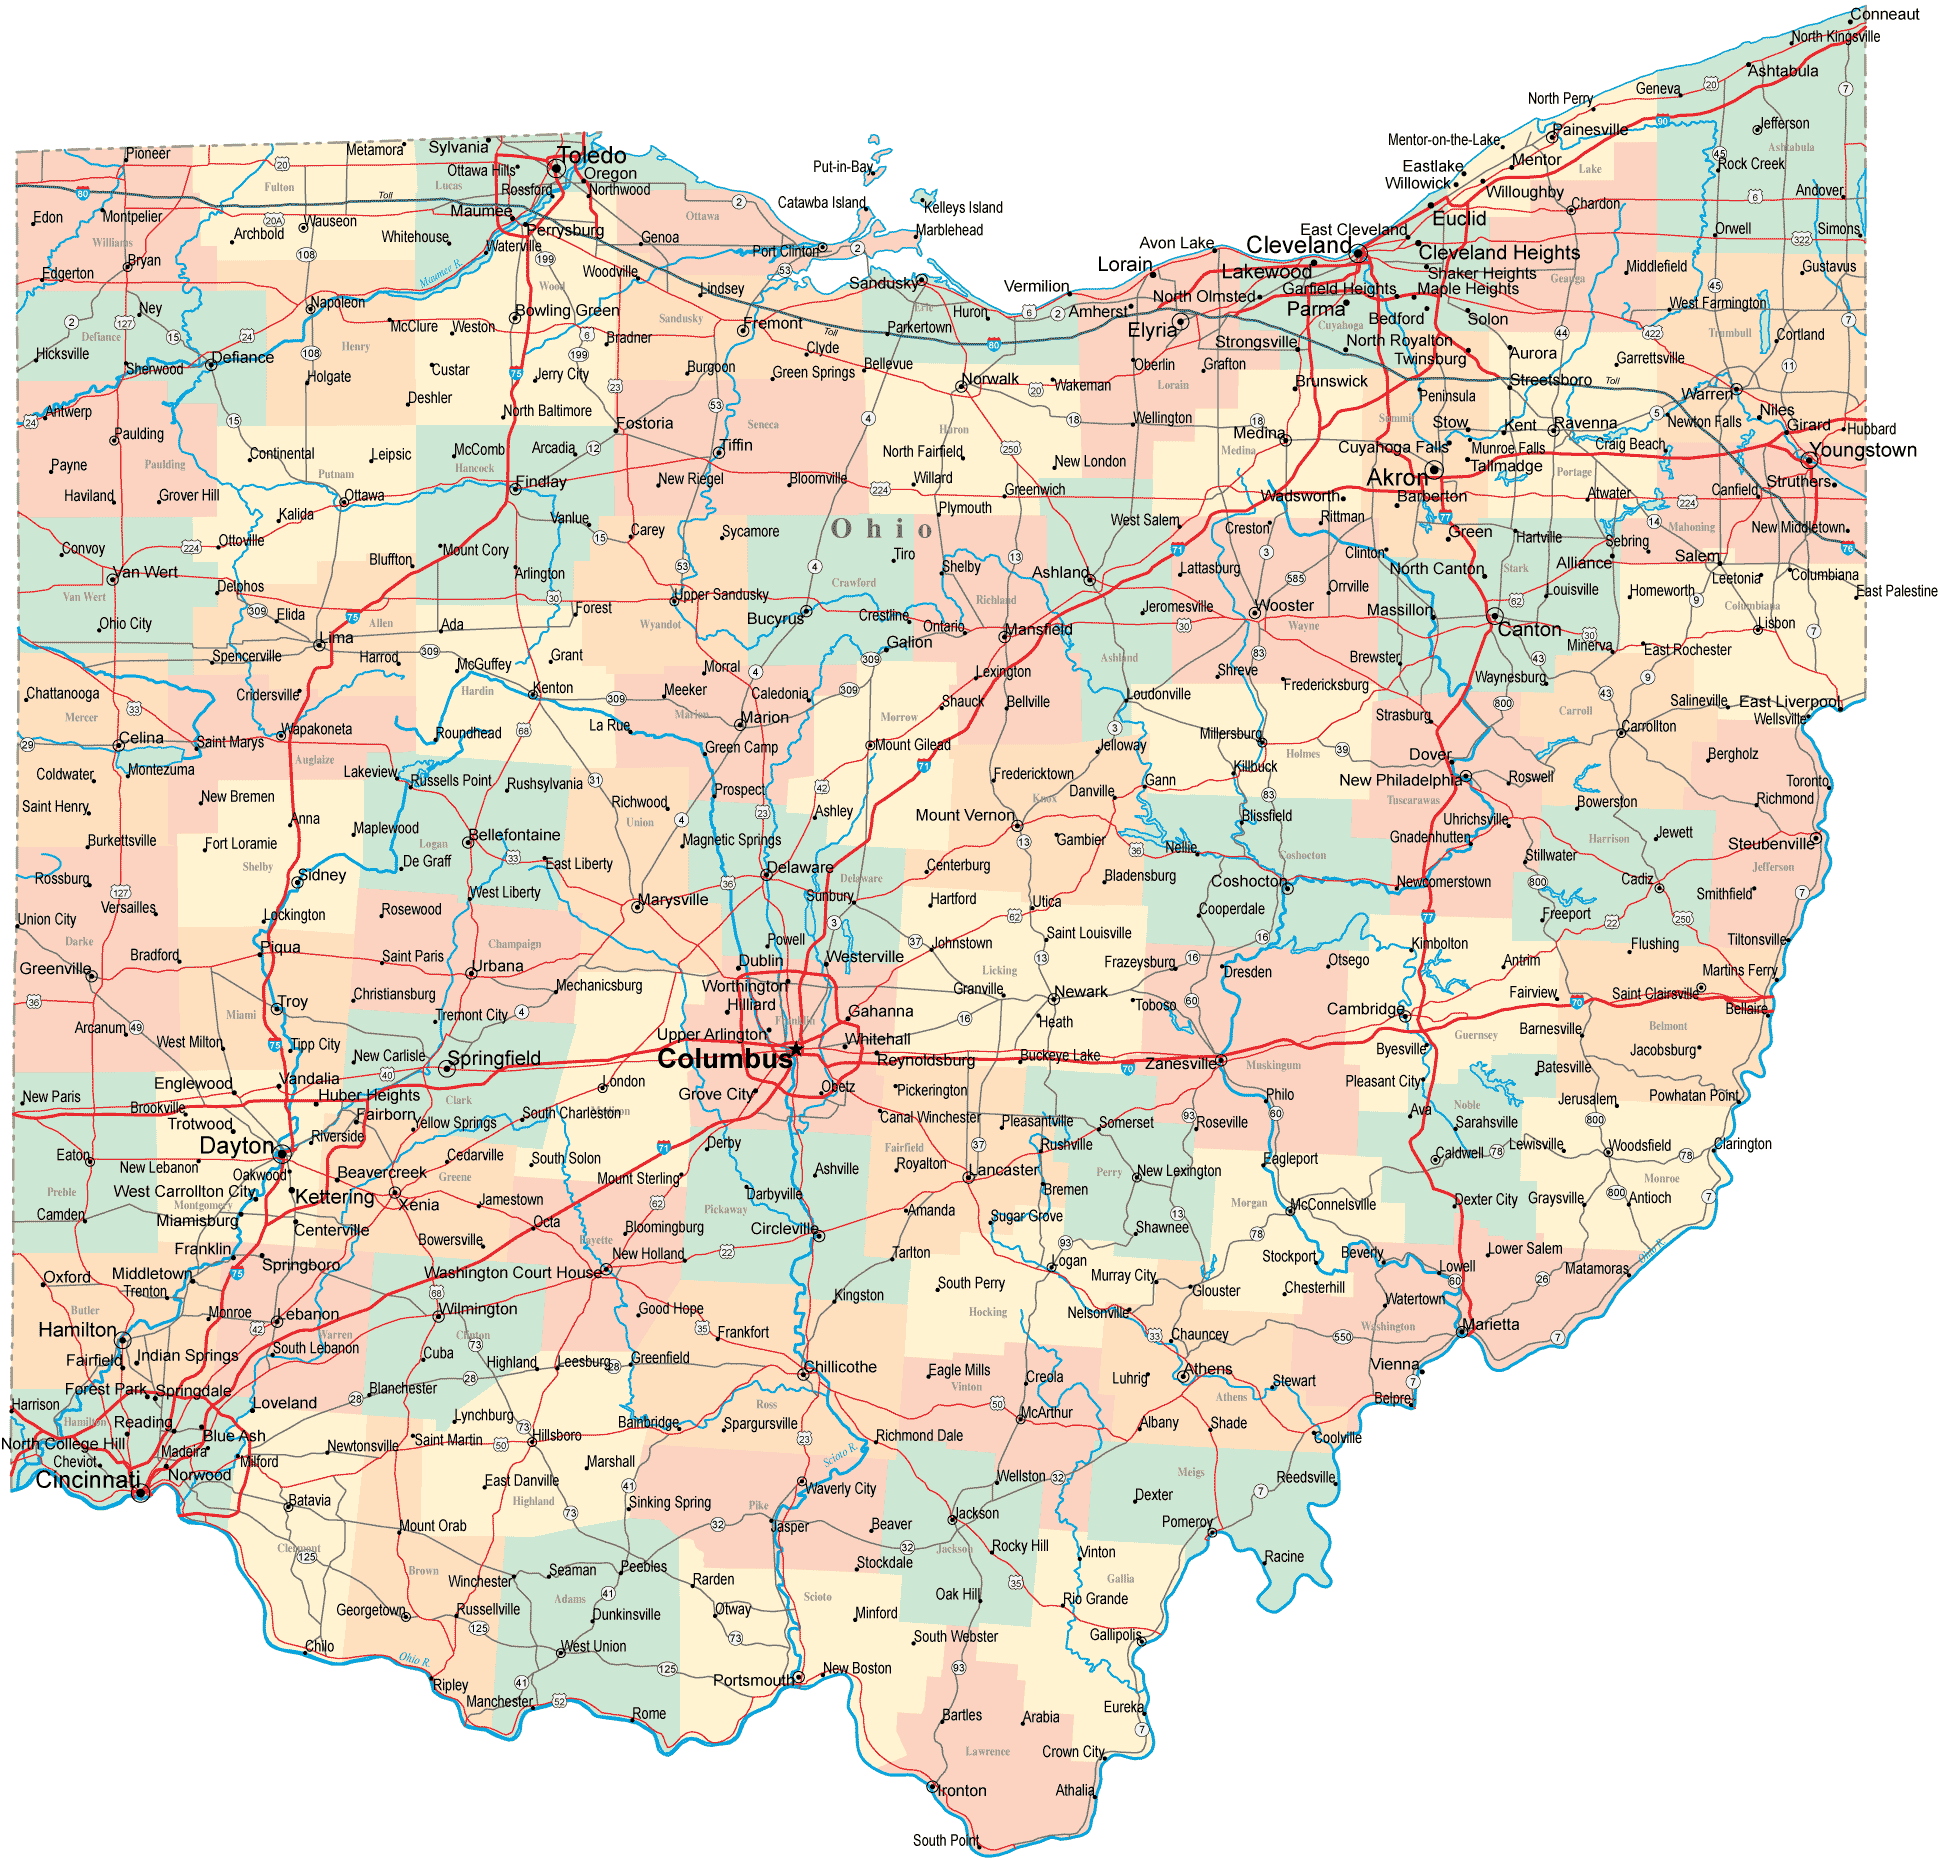 map of northwest ohio Ohio Road Map Oh Road Map Ohio Roads And Highways map of northwest ohio